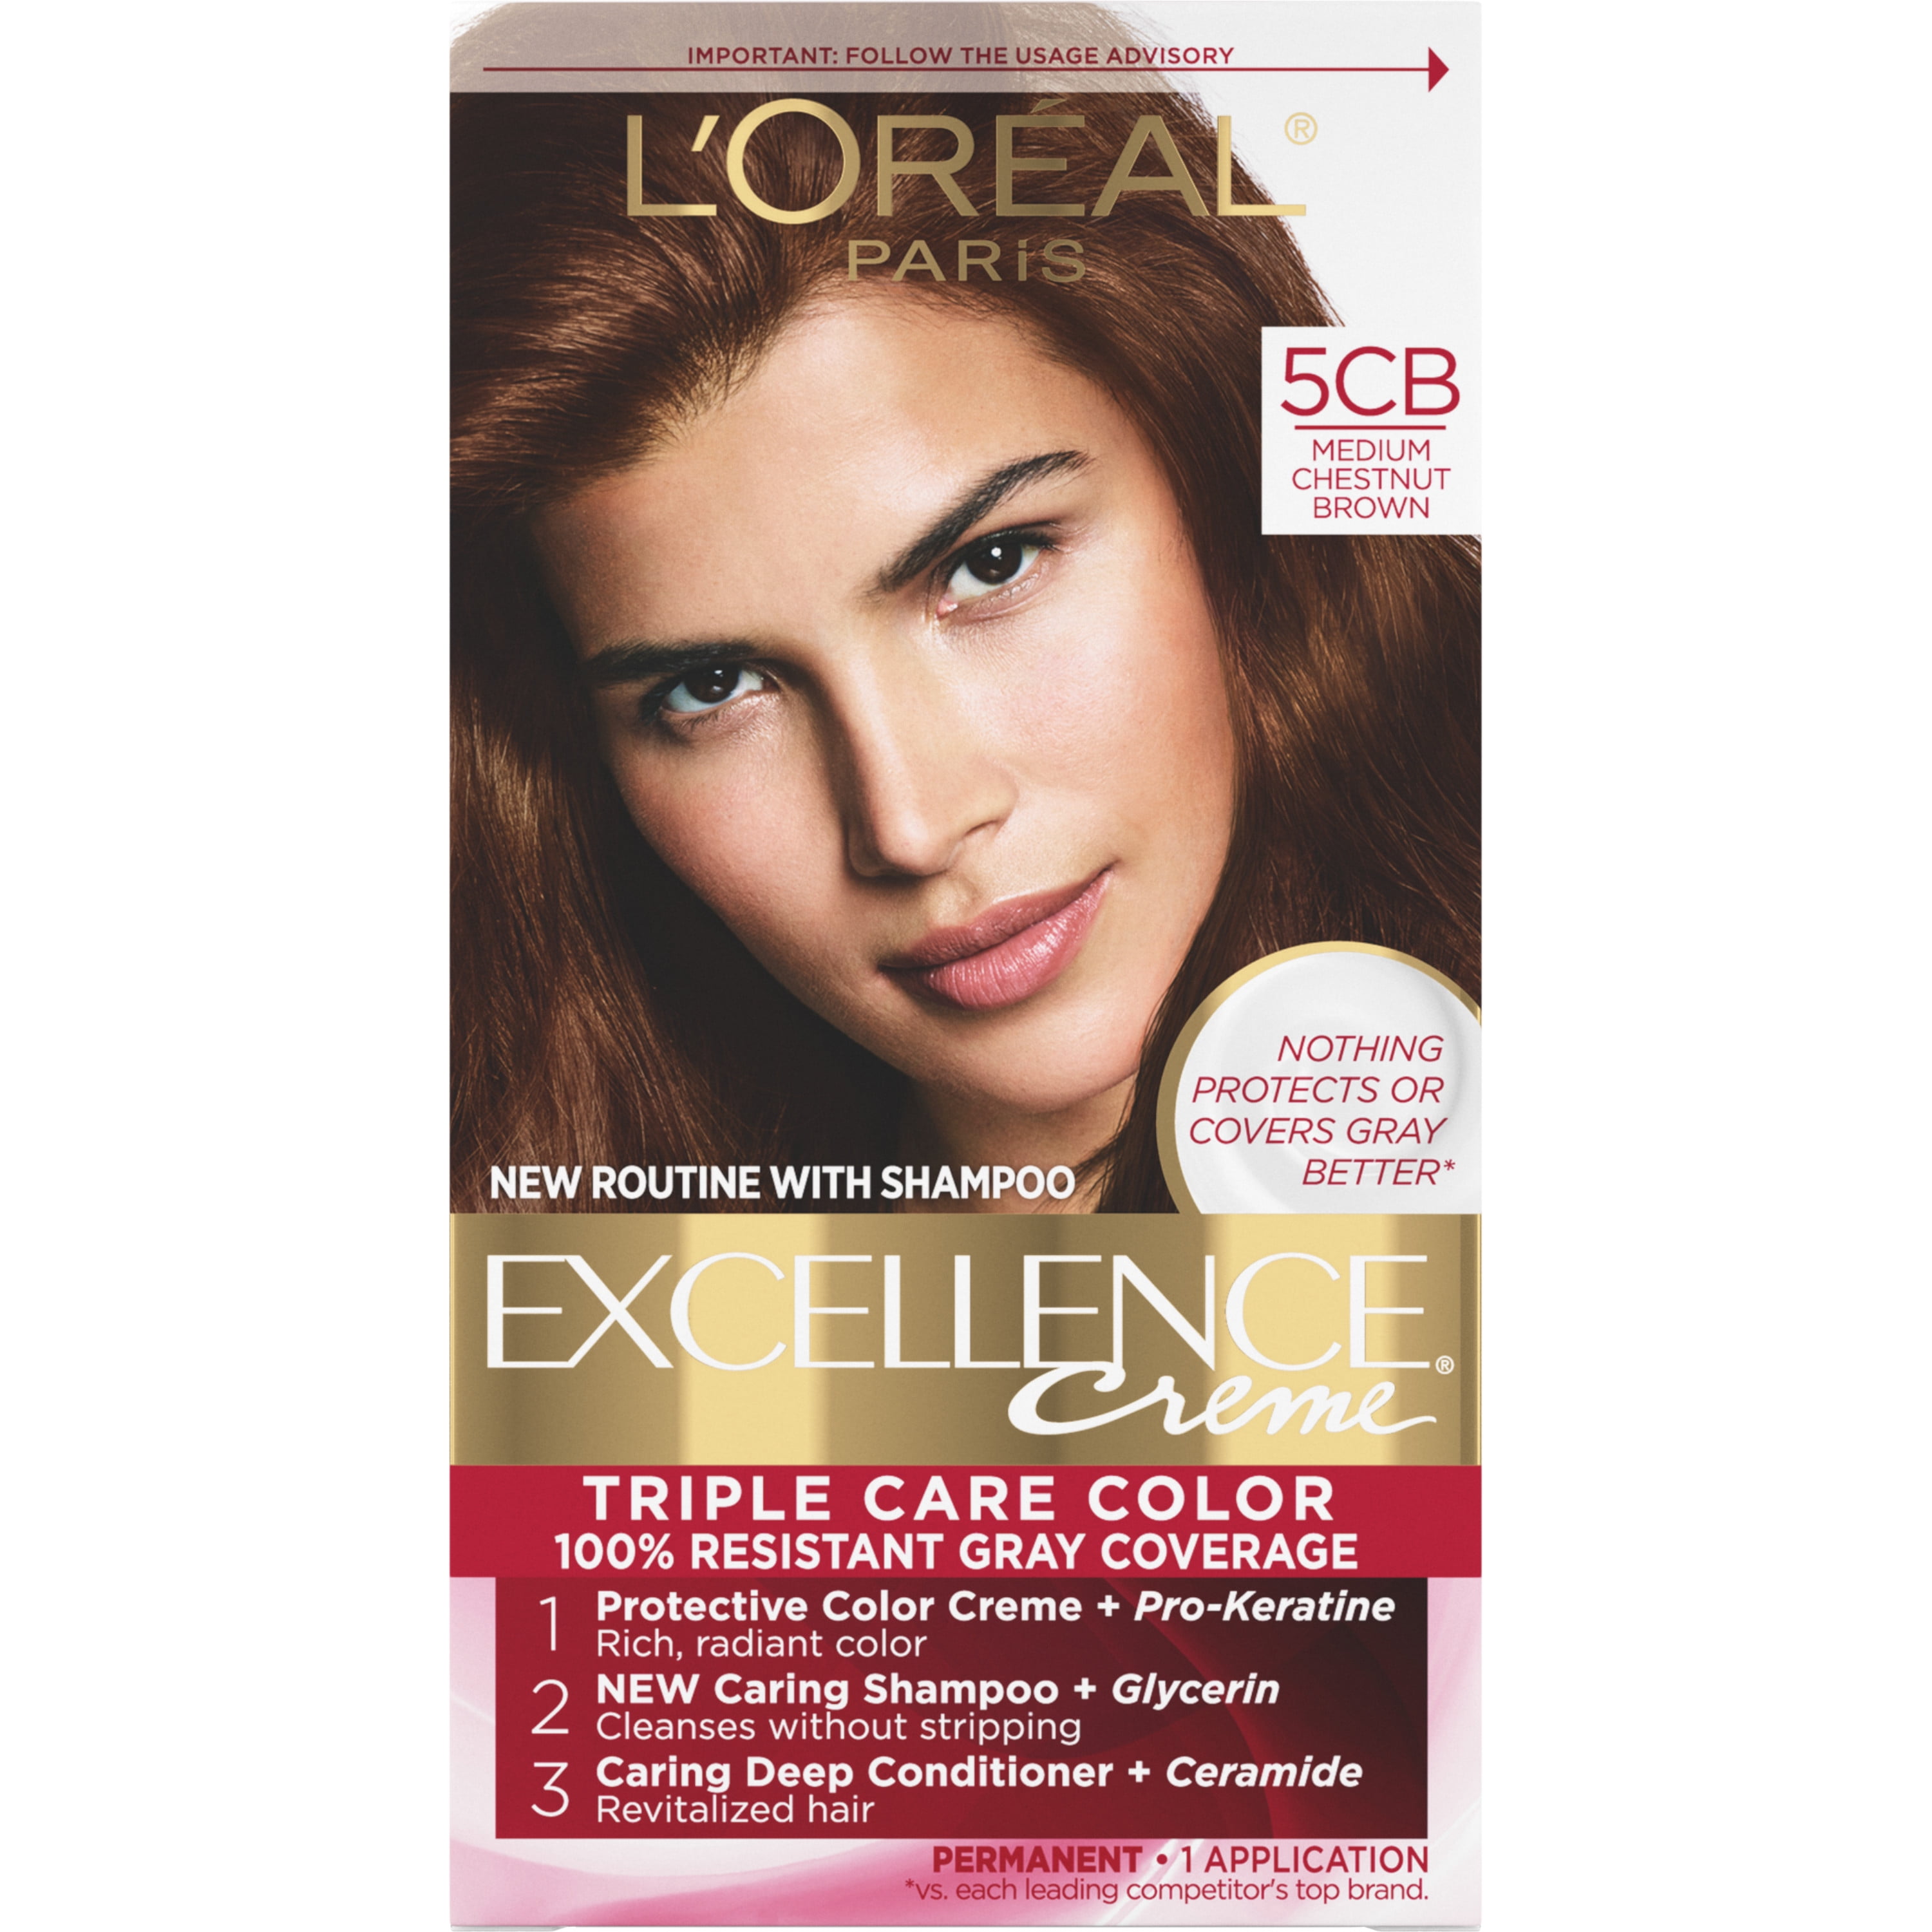 L'Oreal Paris Excellence Creme Permanent Hair Color, 5CB Medium Chestnut Brown